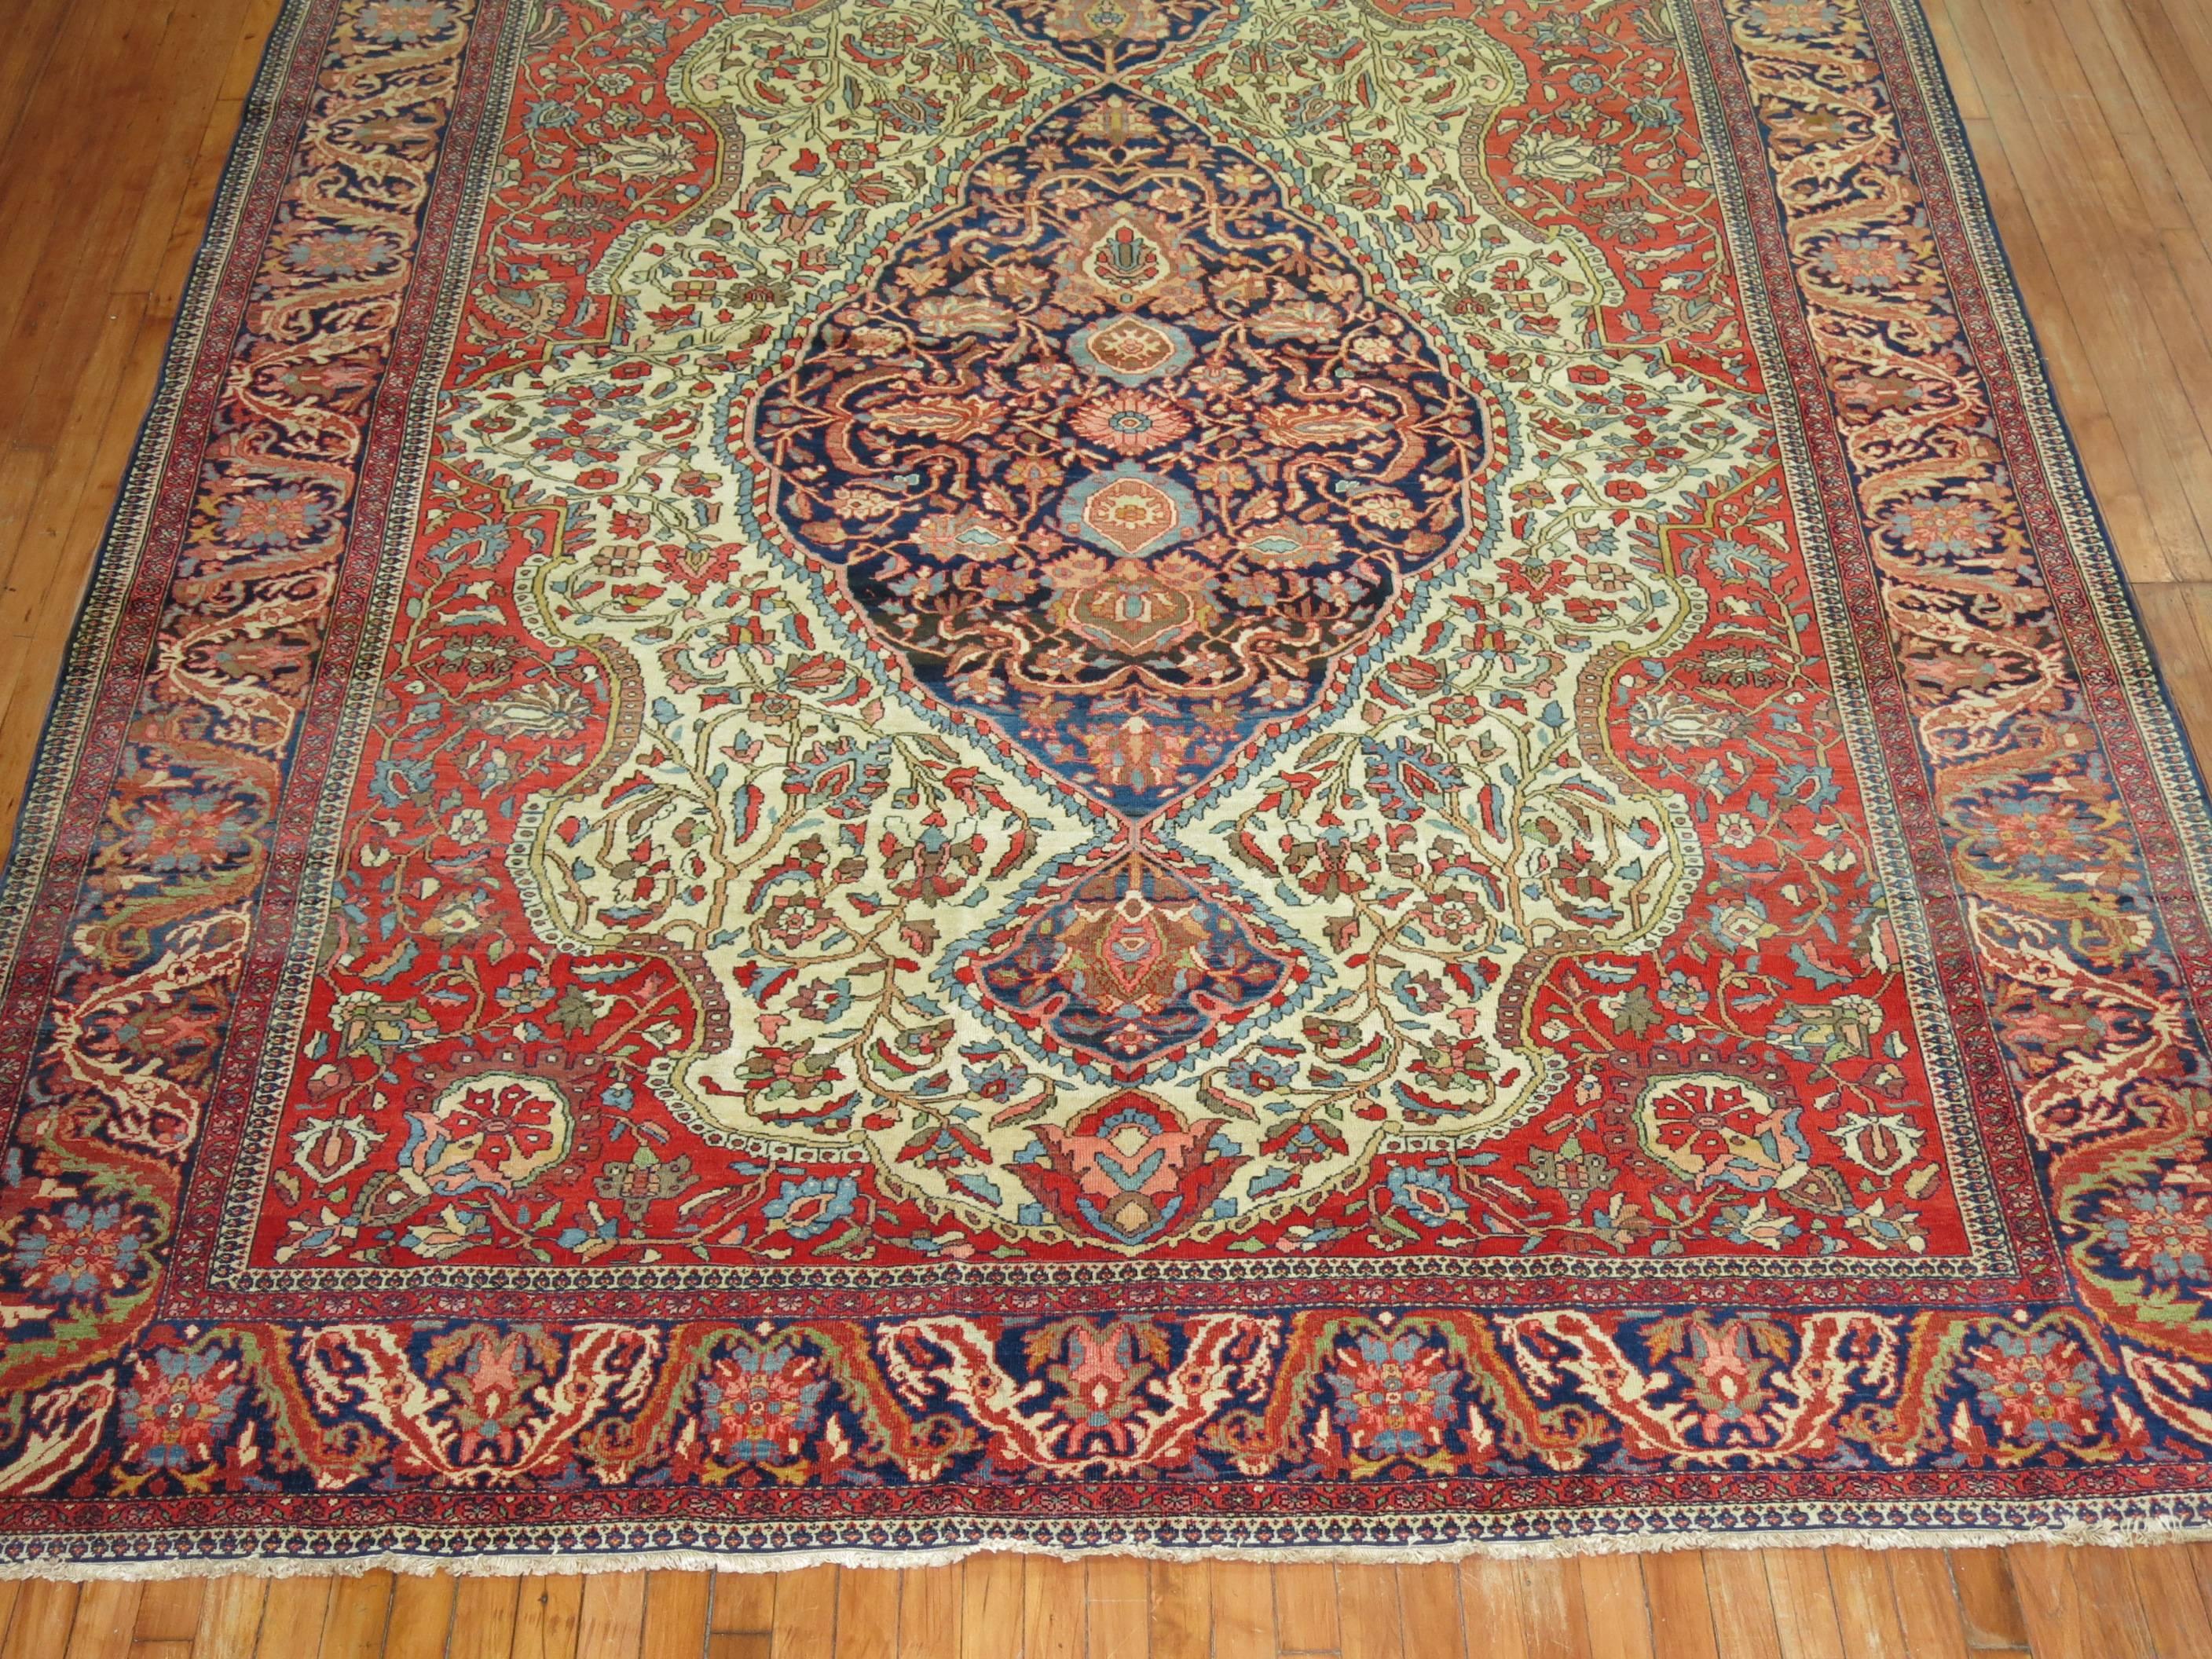 Ein authentischer Sarouk-Ferahan-Teppich aus dem frühen 20. Jahrhundert mit klassischem Medaillon- und Bordürenmuster. 

Ferahan-Teppiche auf Investitionsniveau wurden nach den 1910er Jahren nicht mehr hergestellt, und die feineren Exemplare aus